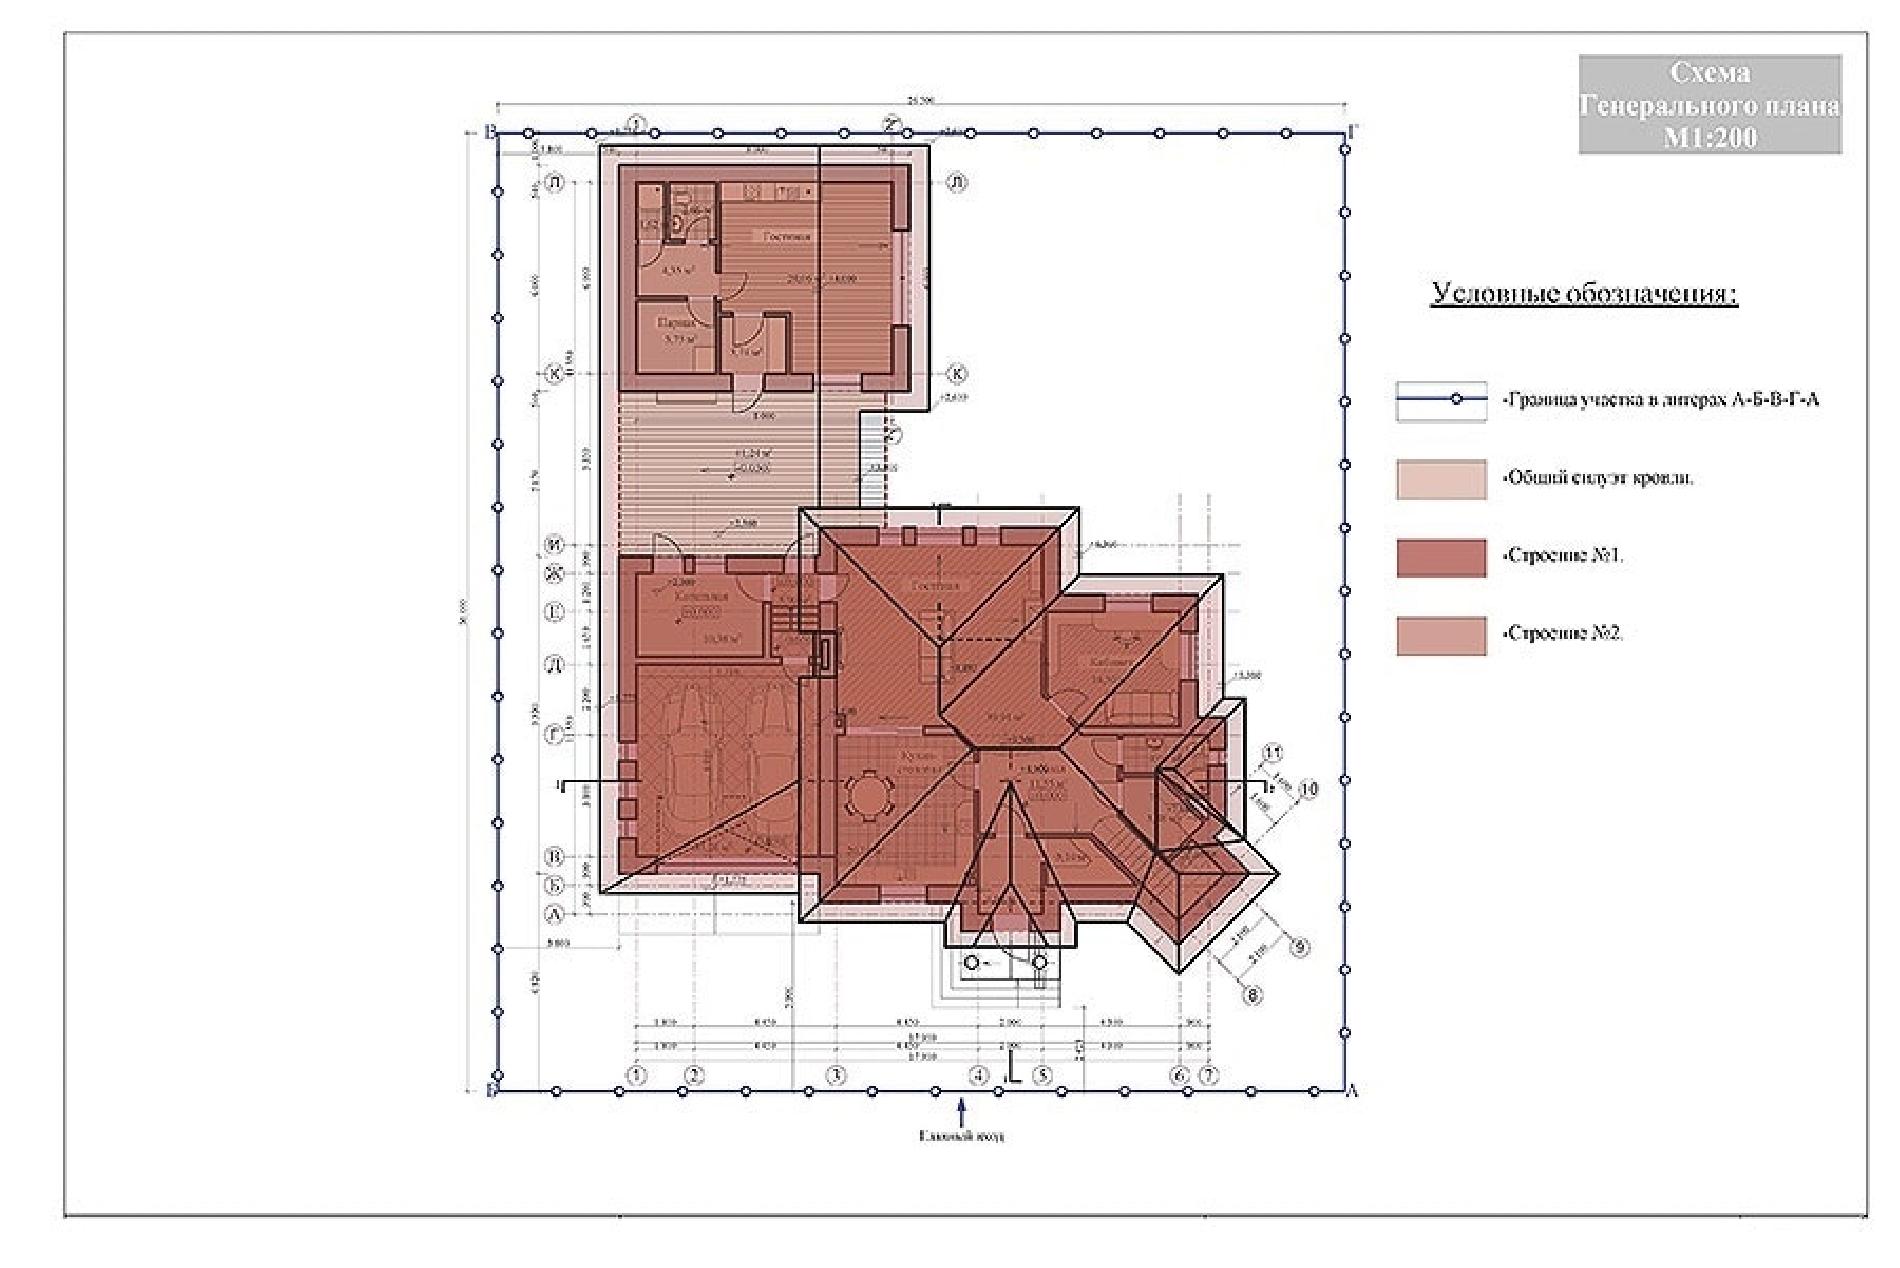 Планировка проекта дома №av-275 av-275-min.jpg